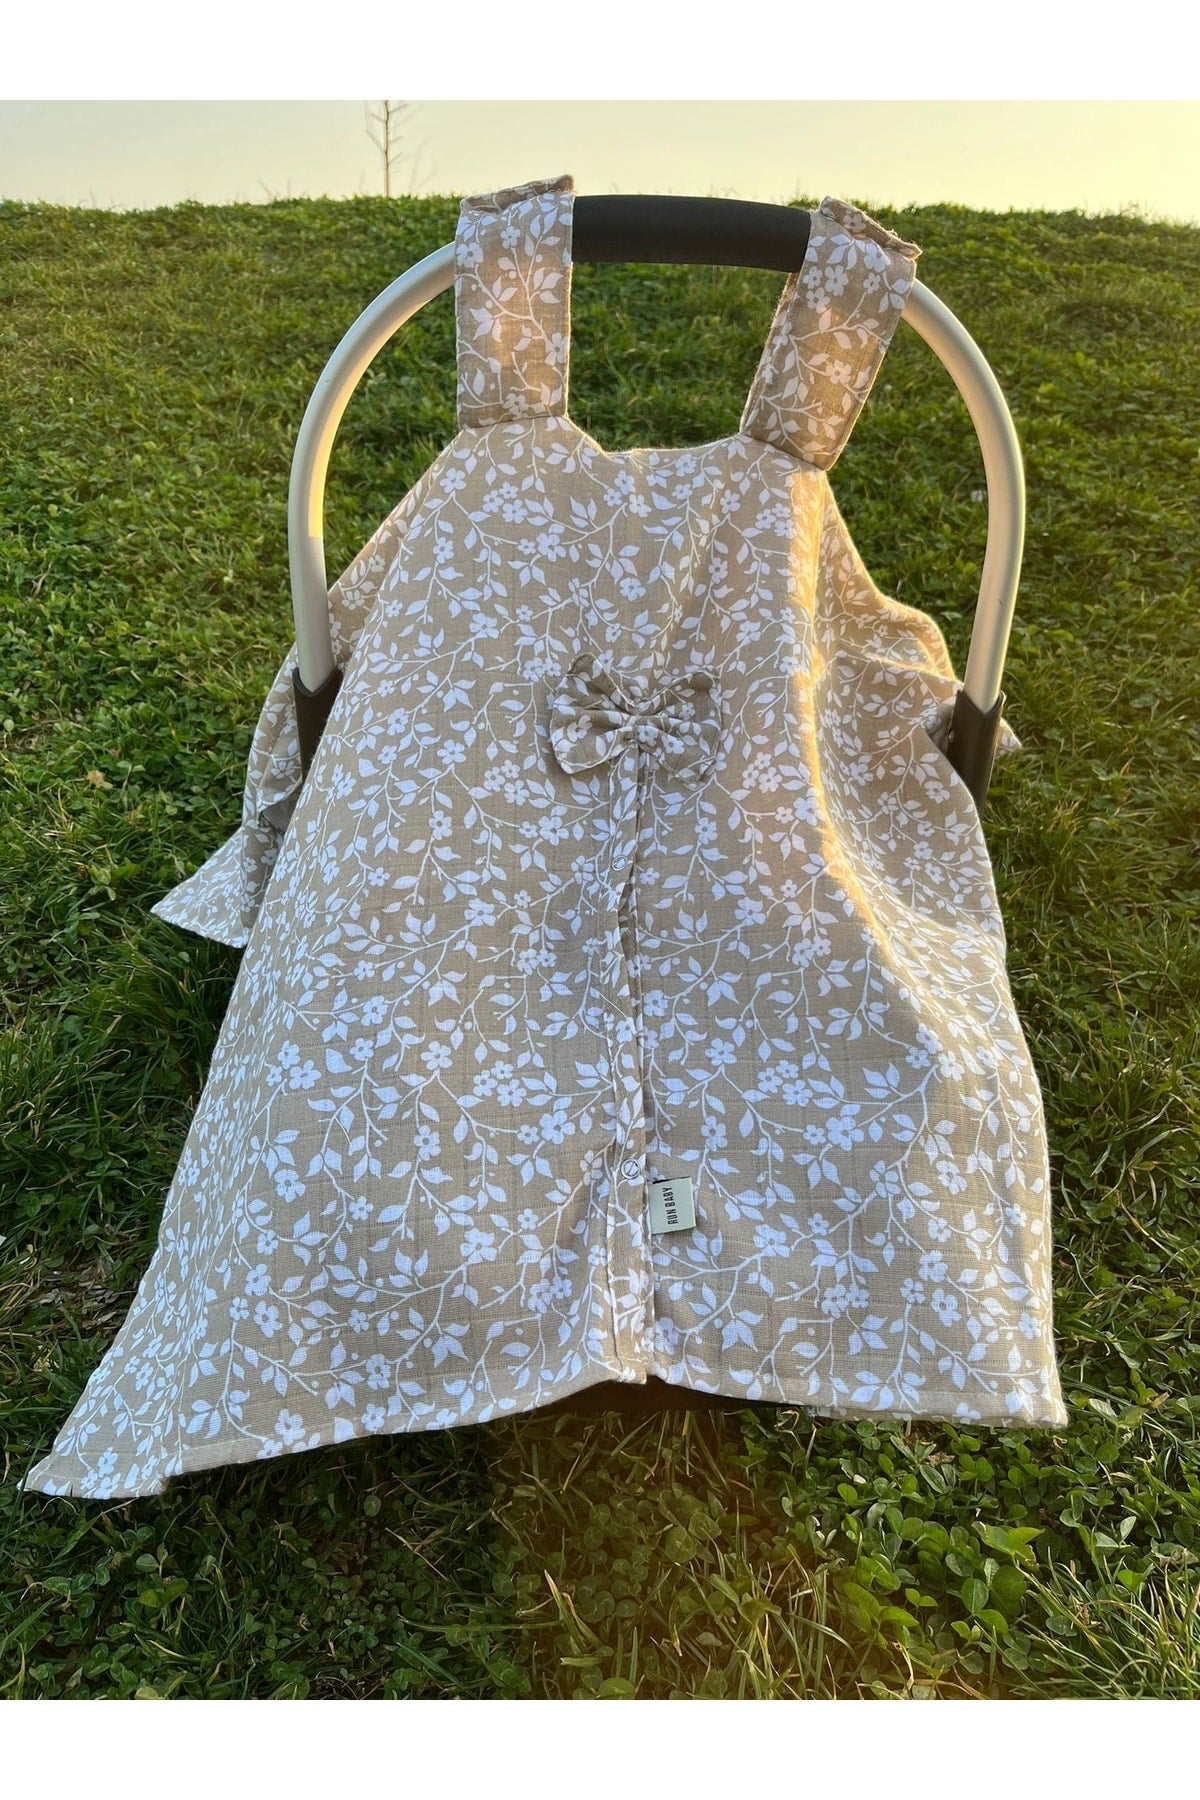 Run Baby Muslin Fabric Scrub Cover (Beige Flower) 75x100cm